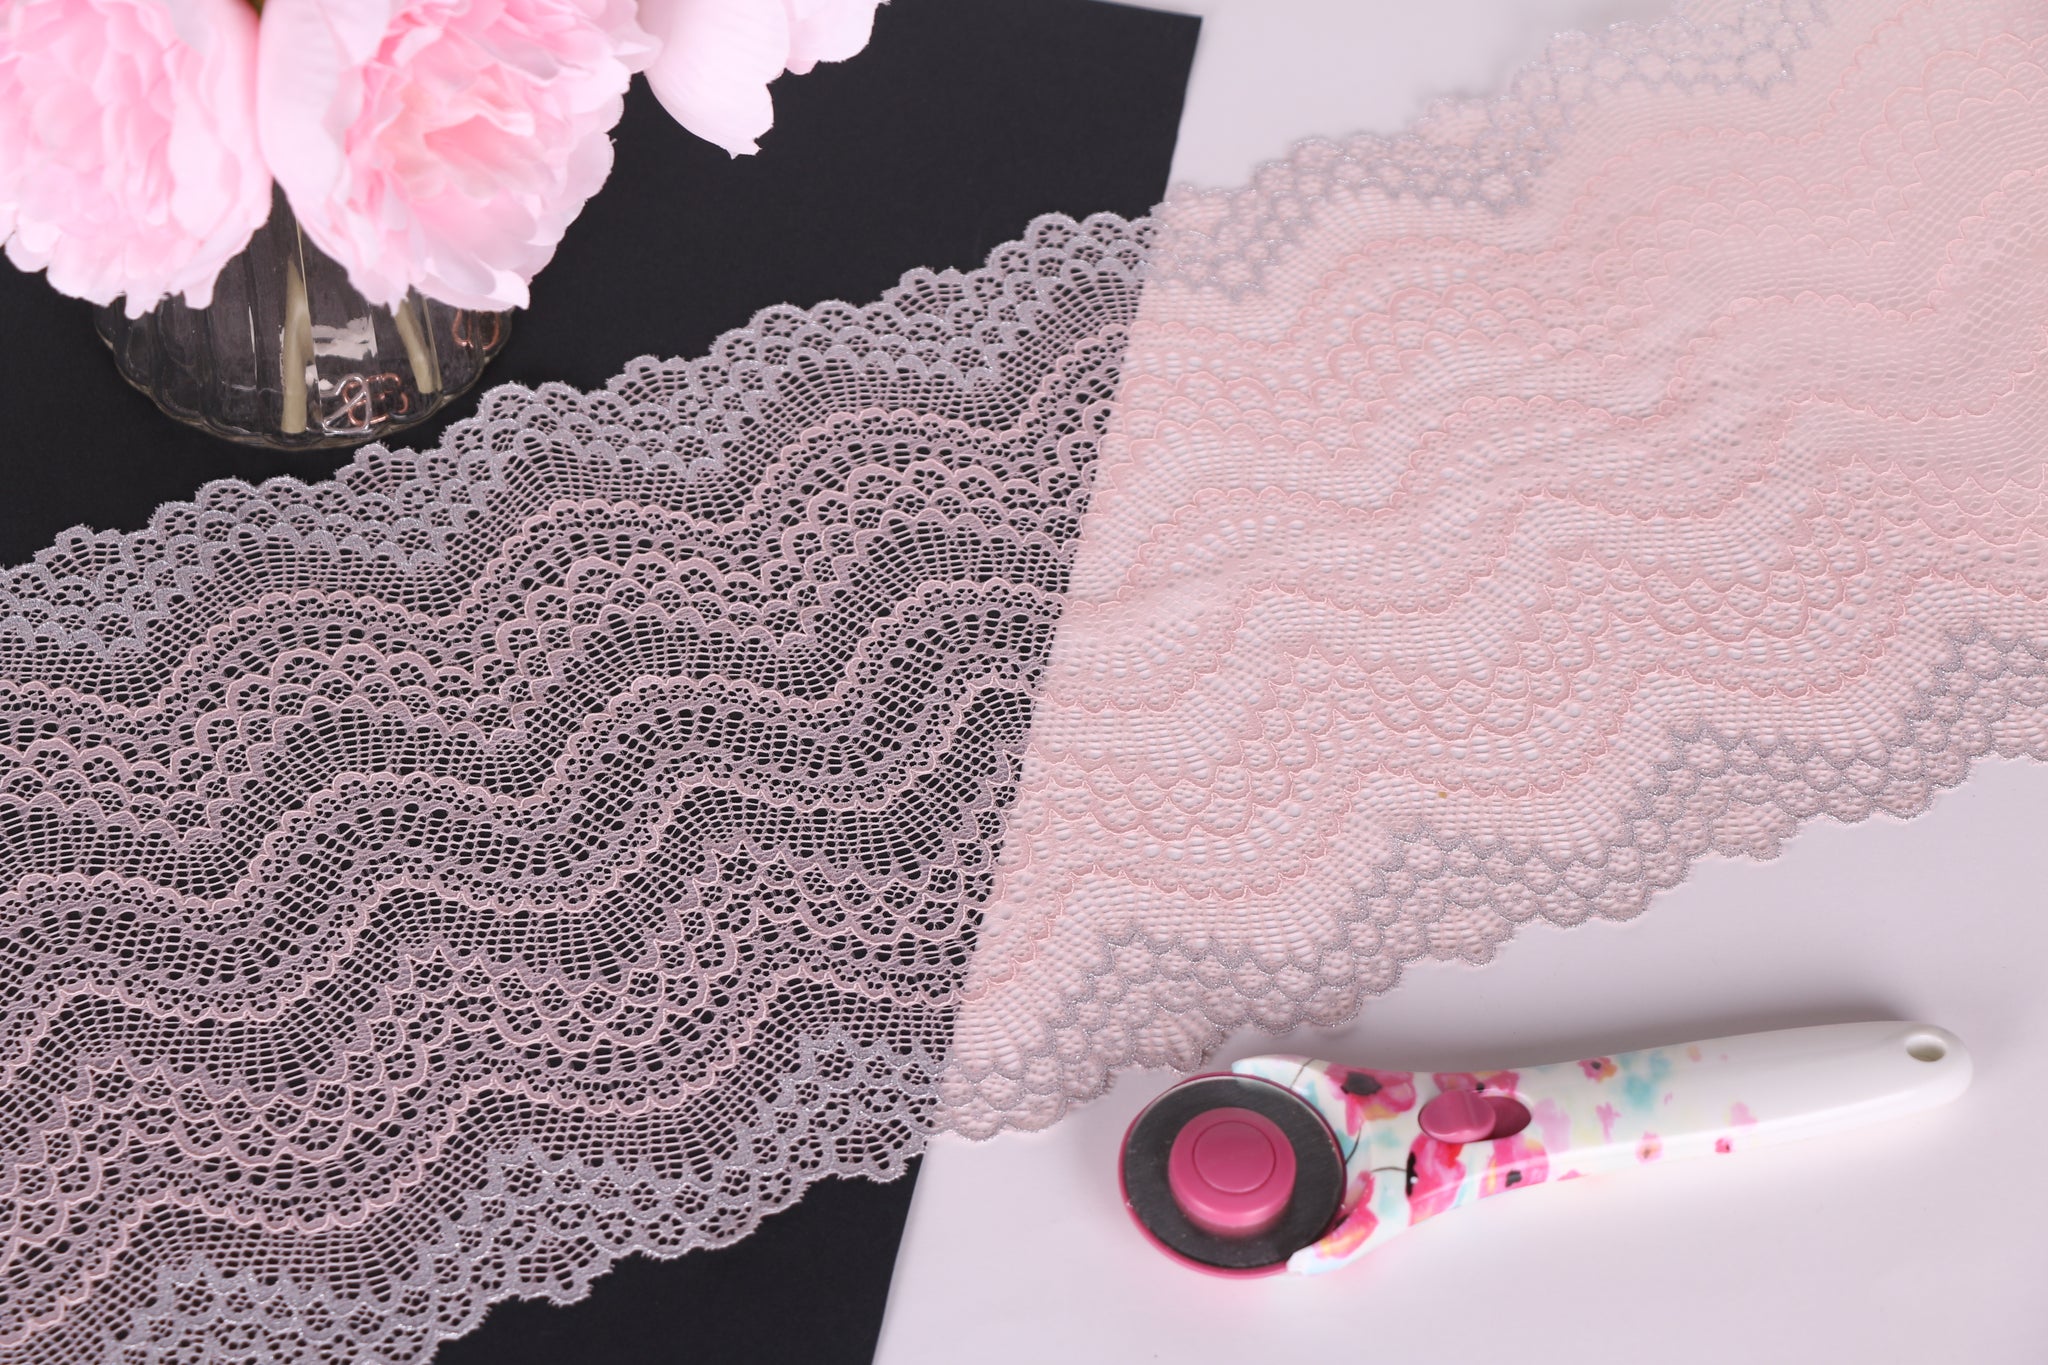 encaje rosa empolvado y gris plateado con ondas para coser lencería, sujetadores, braguitas